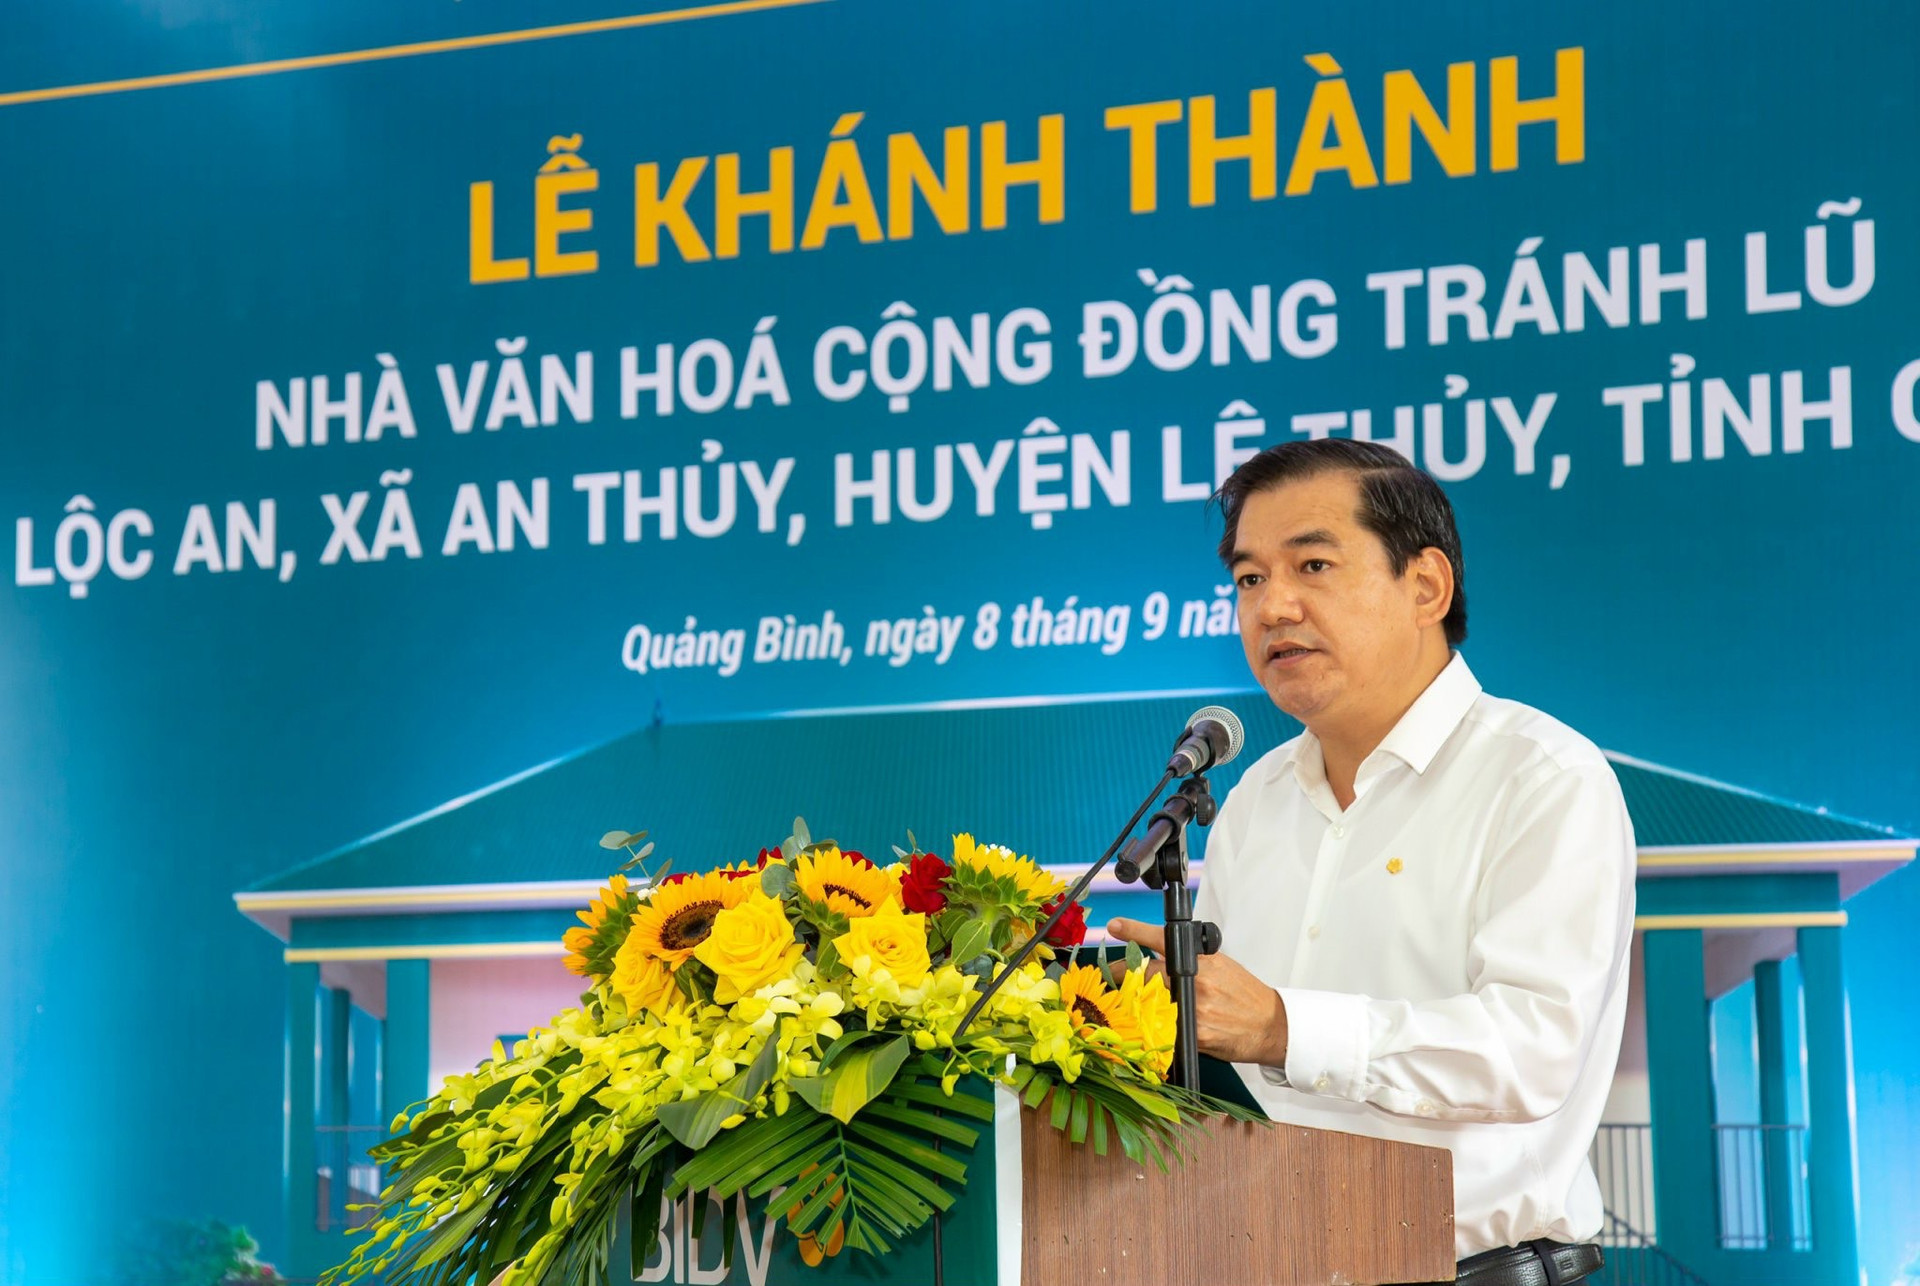 Ông Đặng Văn Tuyên - Ủy viên Hội đồng quản trị BIDV phát biểu tại lễ khánh thành Nhà văn hóa cộng đồng tránh lũ (Quảng Bình).